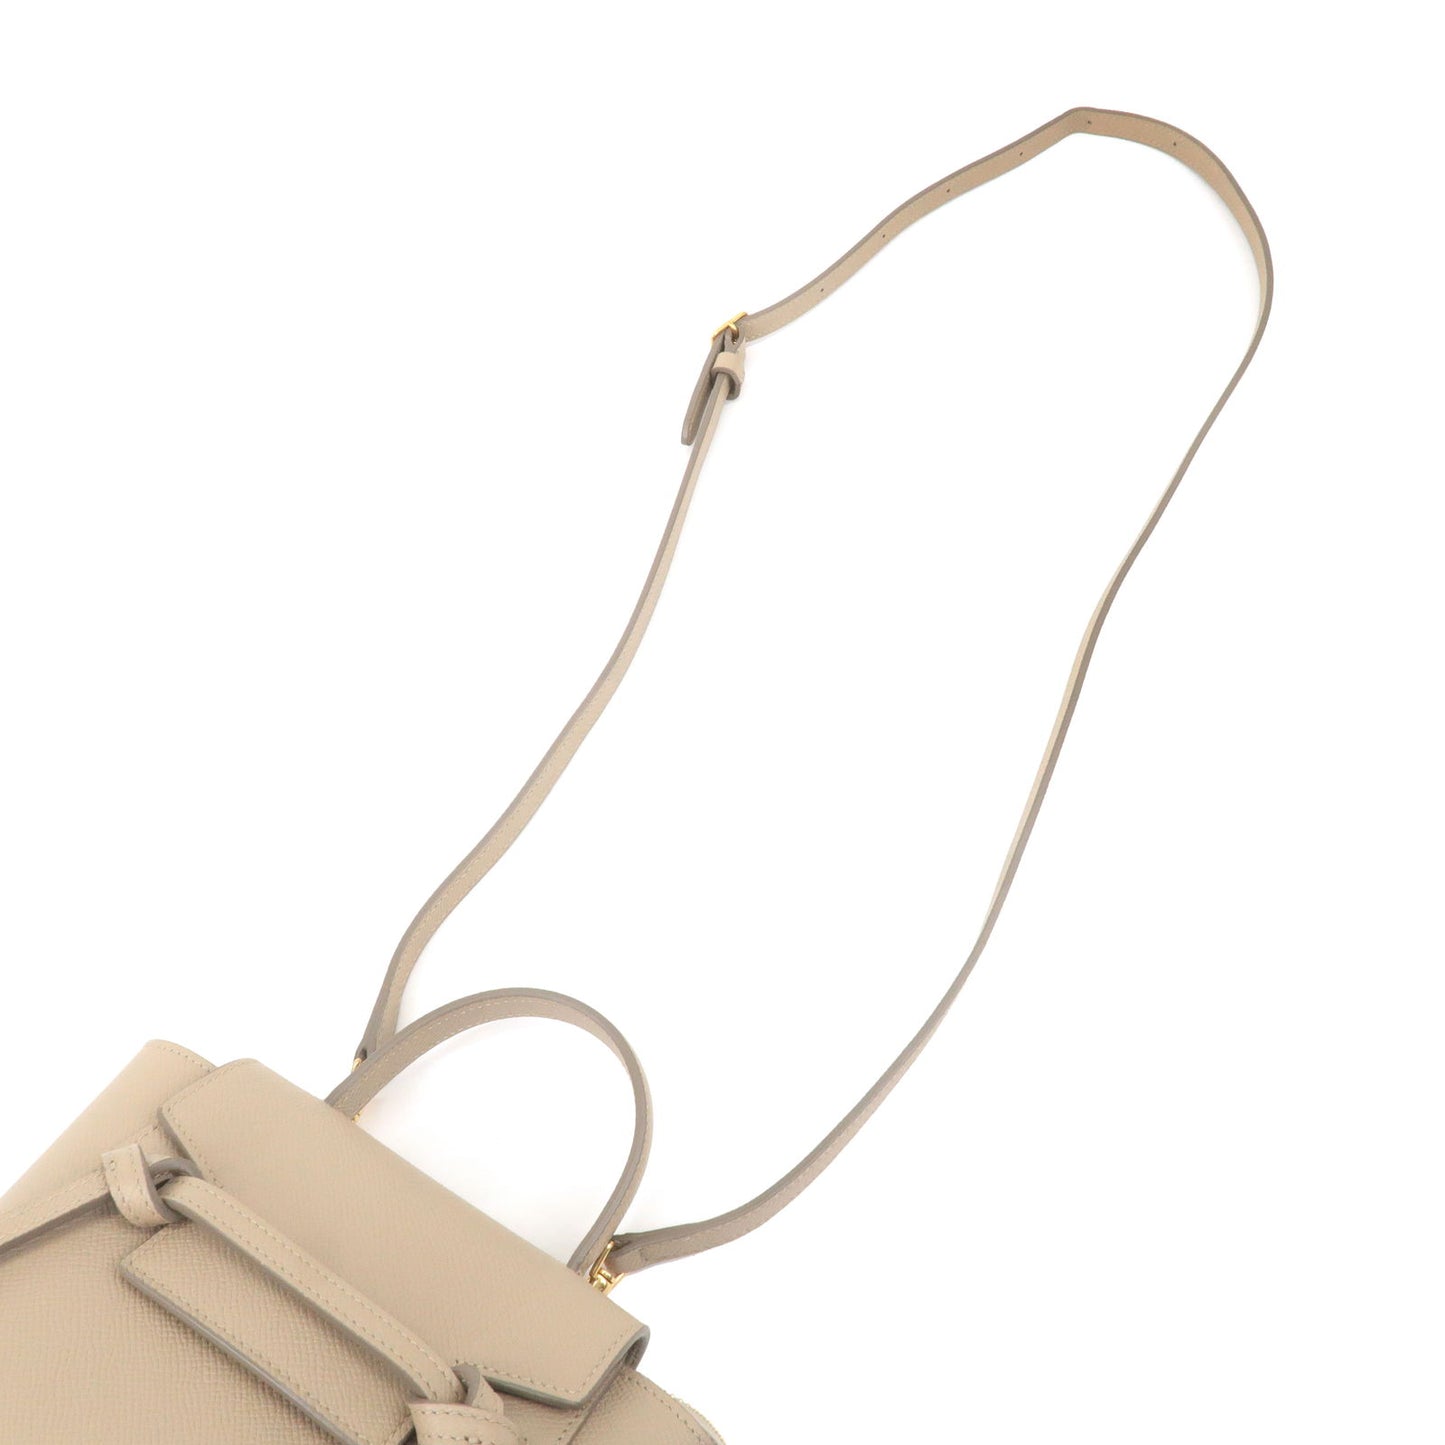 CELINE-Leather-Pico-Belt-Bag-Shoulder-Bag-Light-Taupe-194263